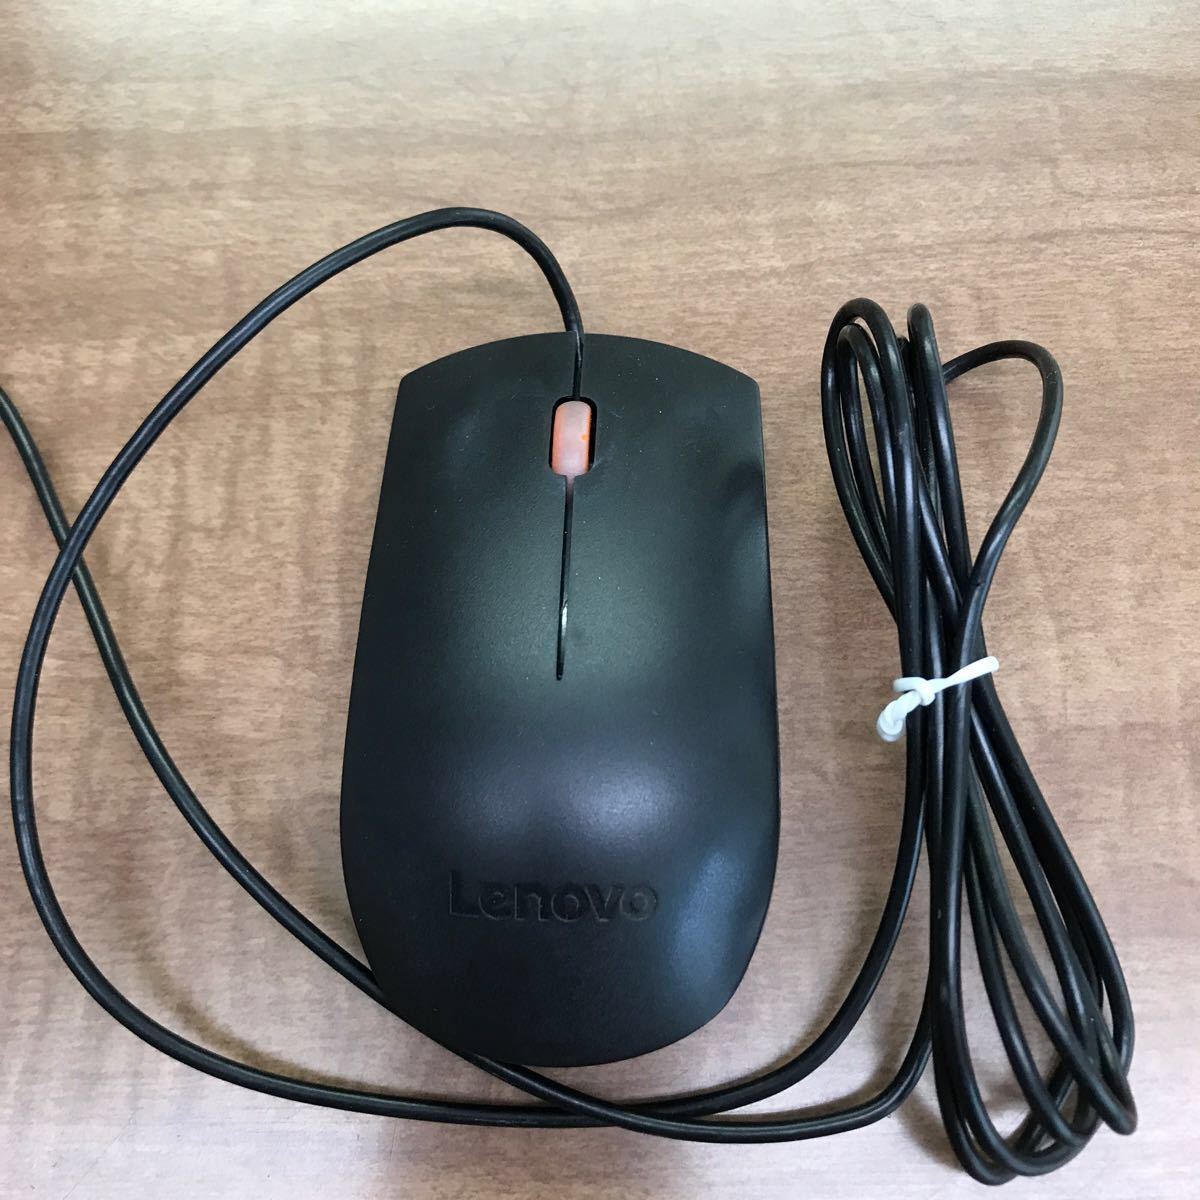 Lenovo キーボード と マウスセット